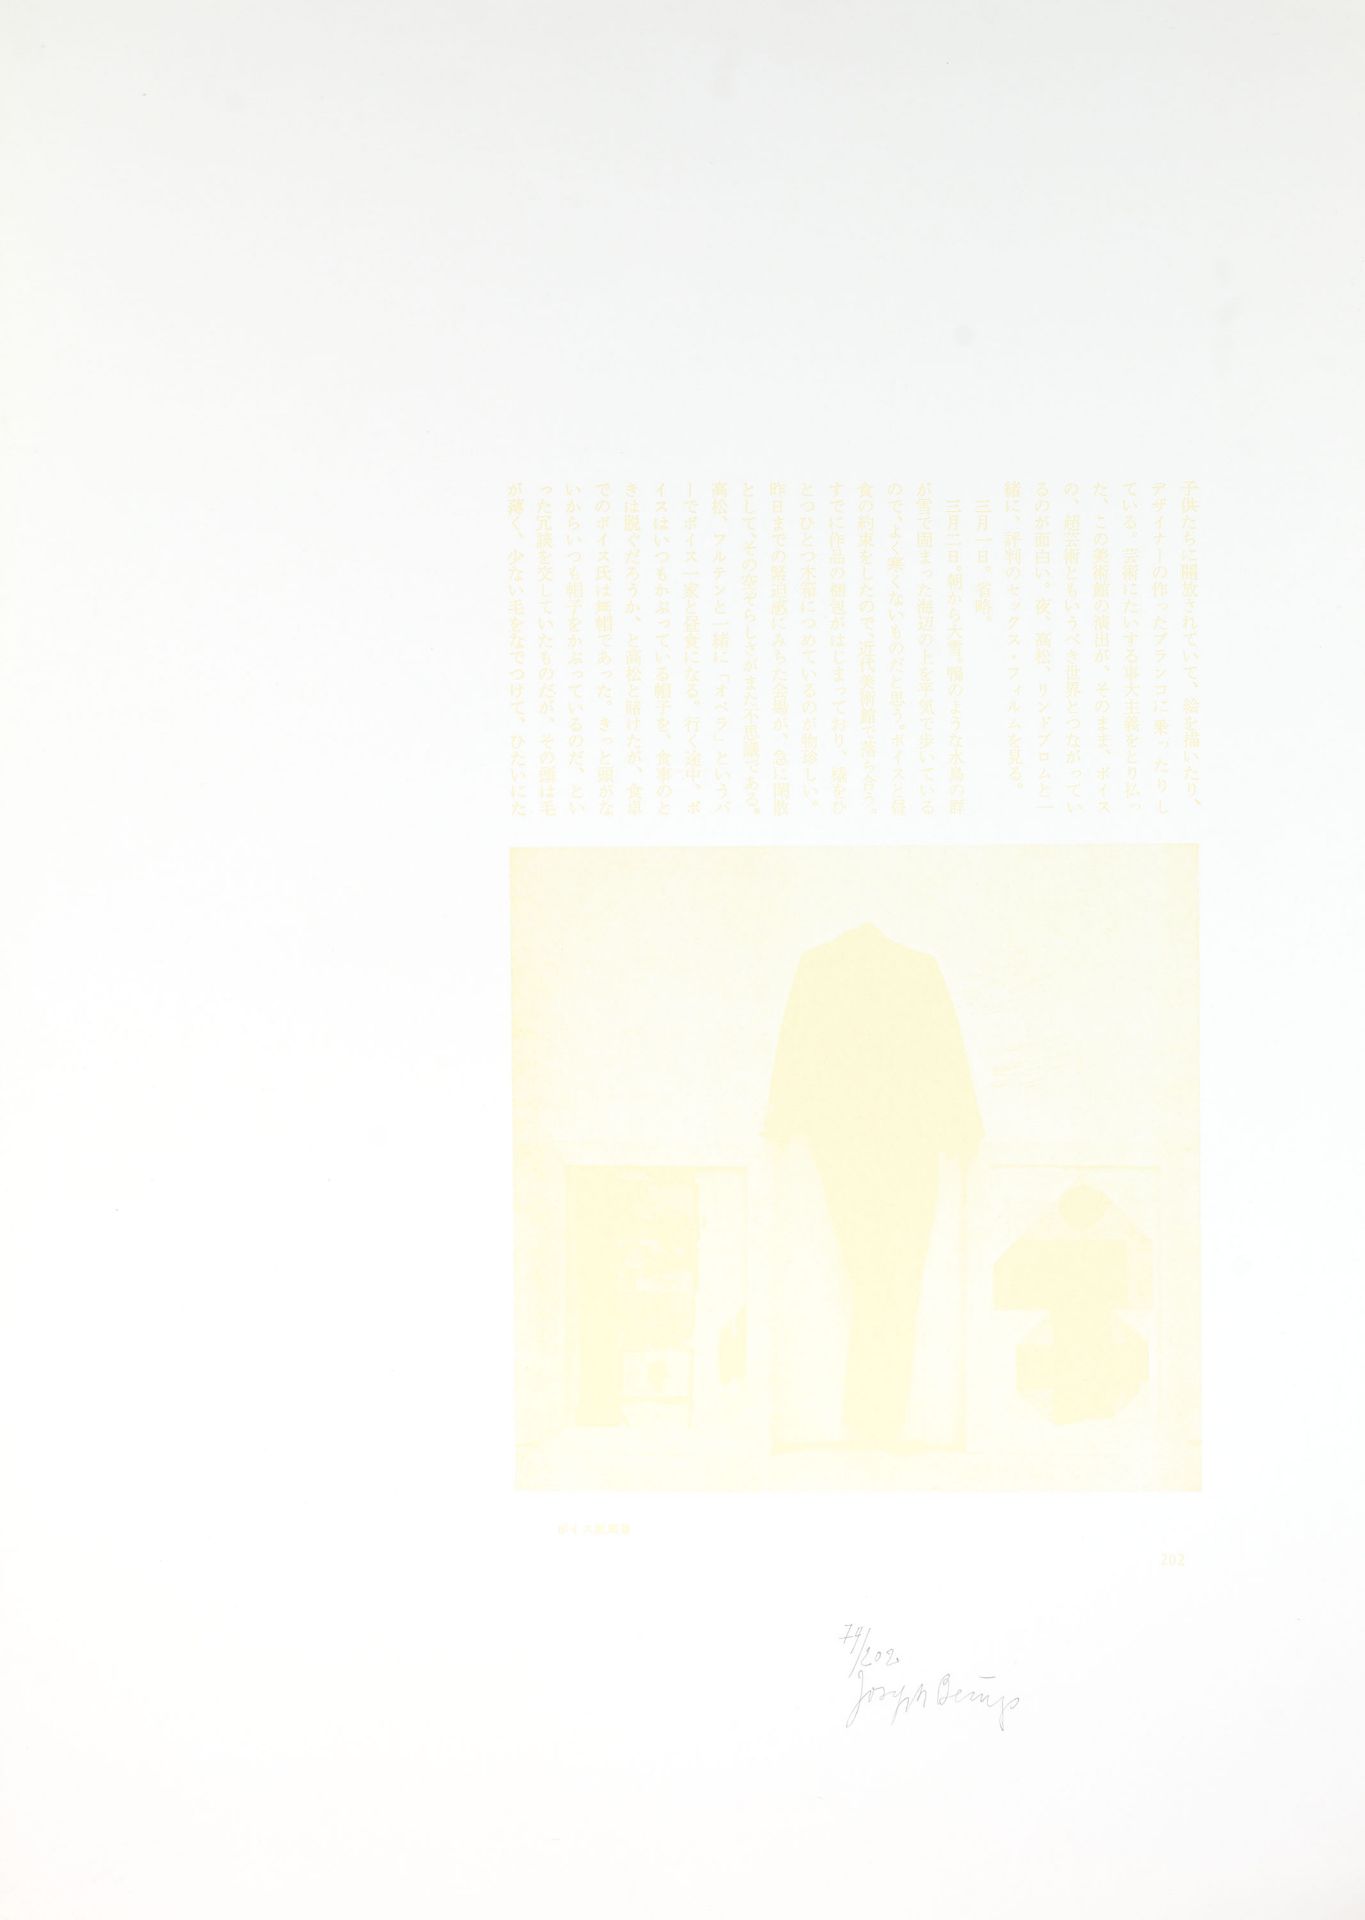 Joseph Beuys. Druck 1 und Druck 2. 2 Blatt Buchdruck, davon einer mit Schwefel. 74. Exemplar von 120 - Bild 2 aus 2